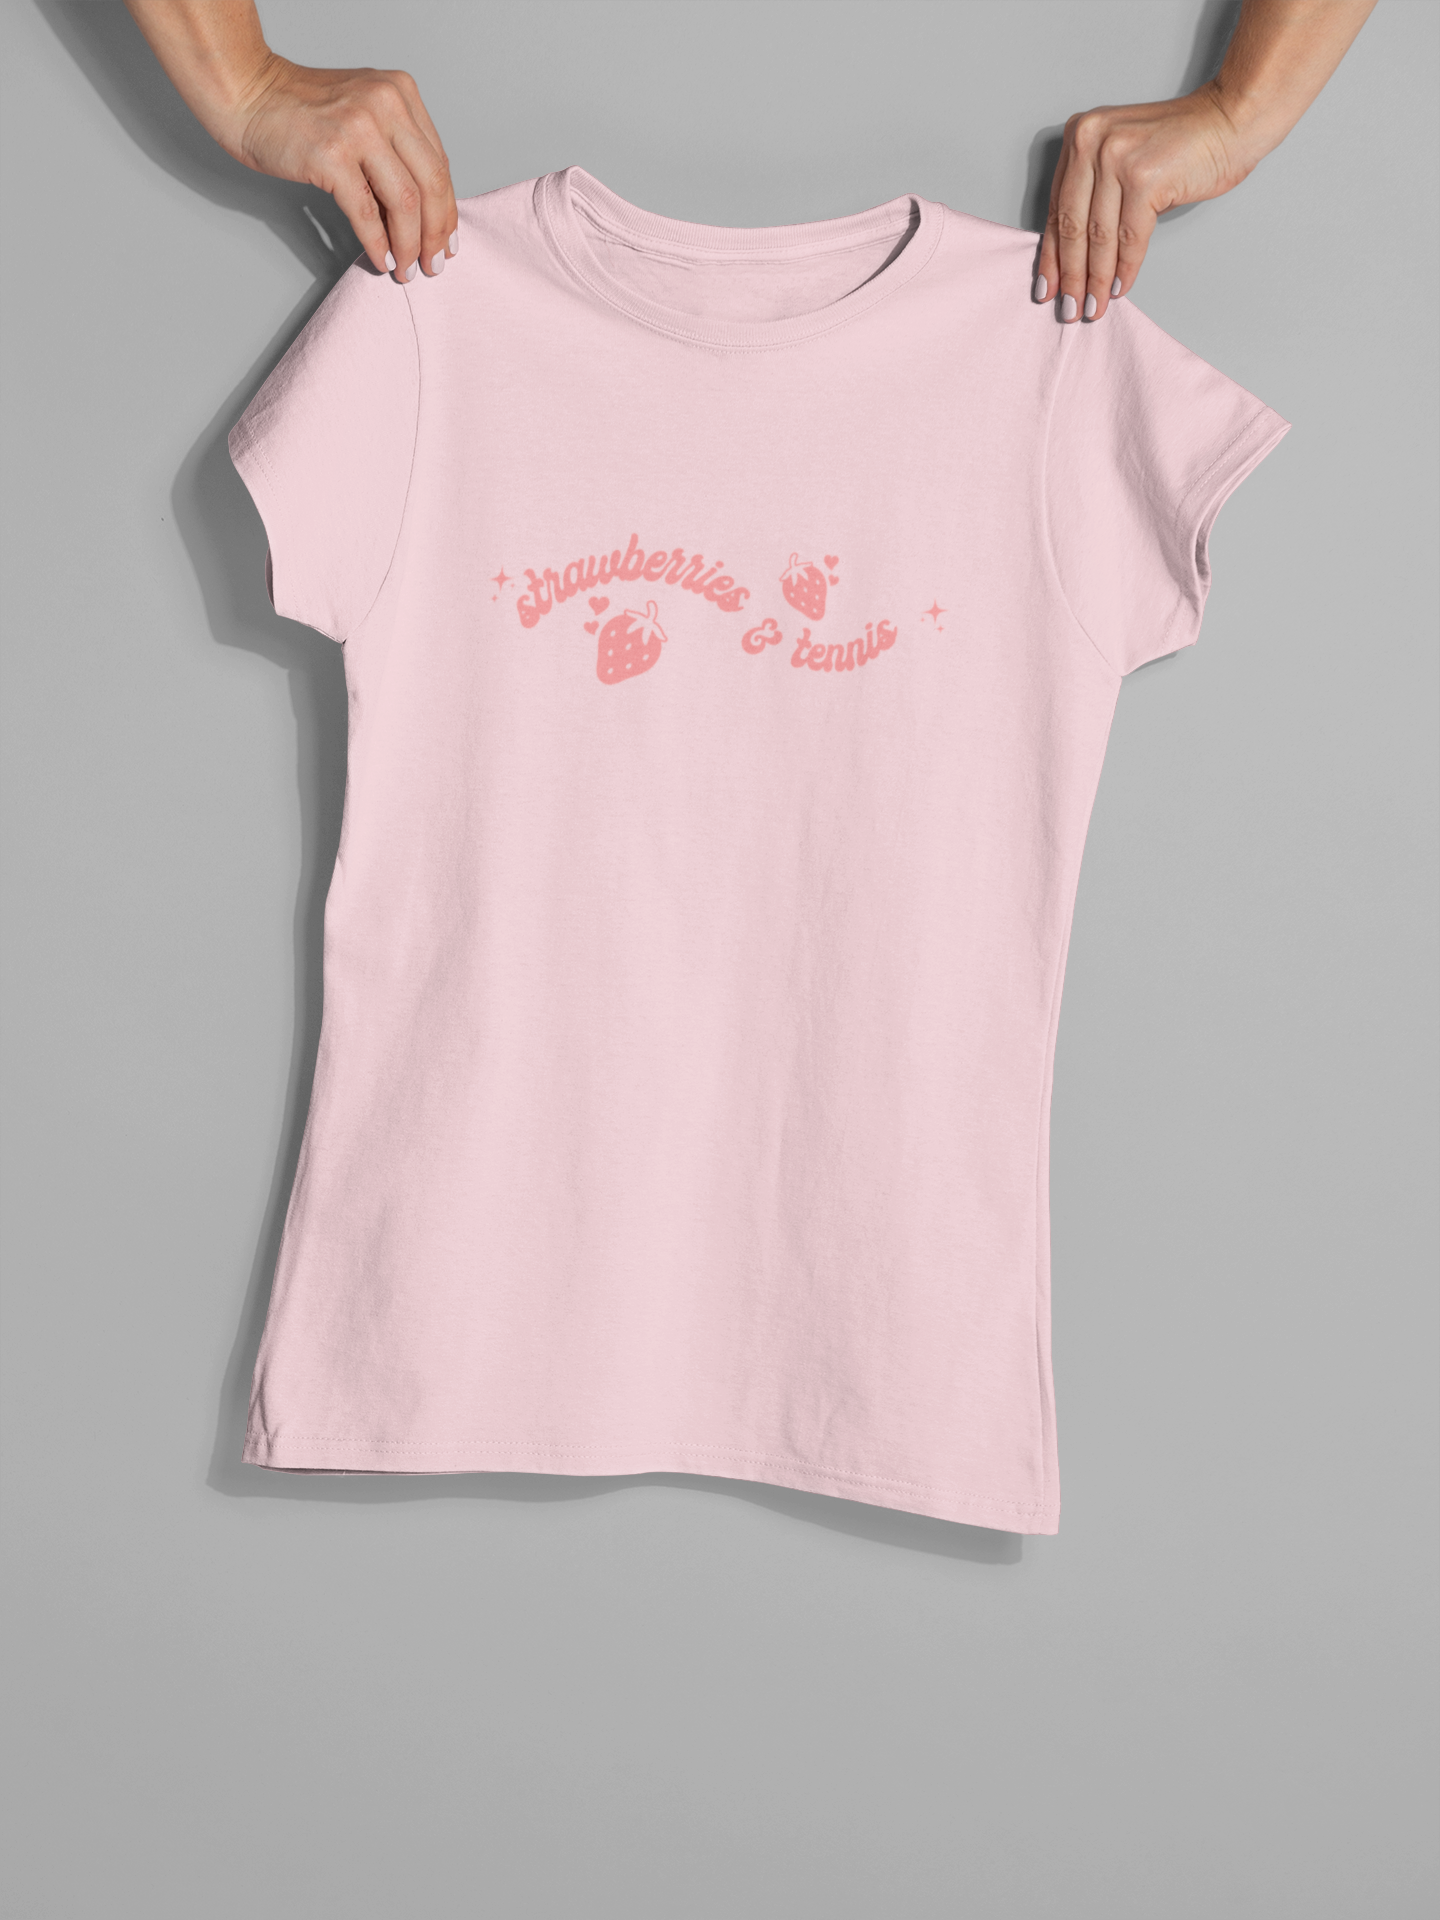 Strawberries And Tennis Women's T-Shirt